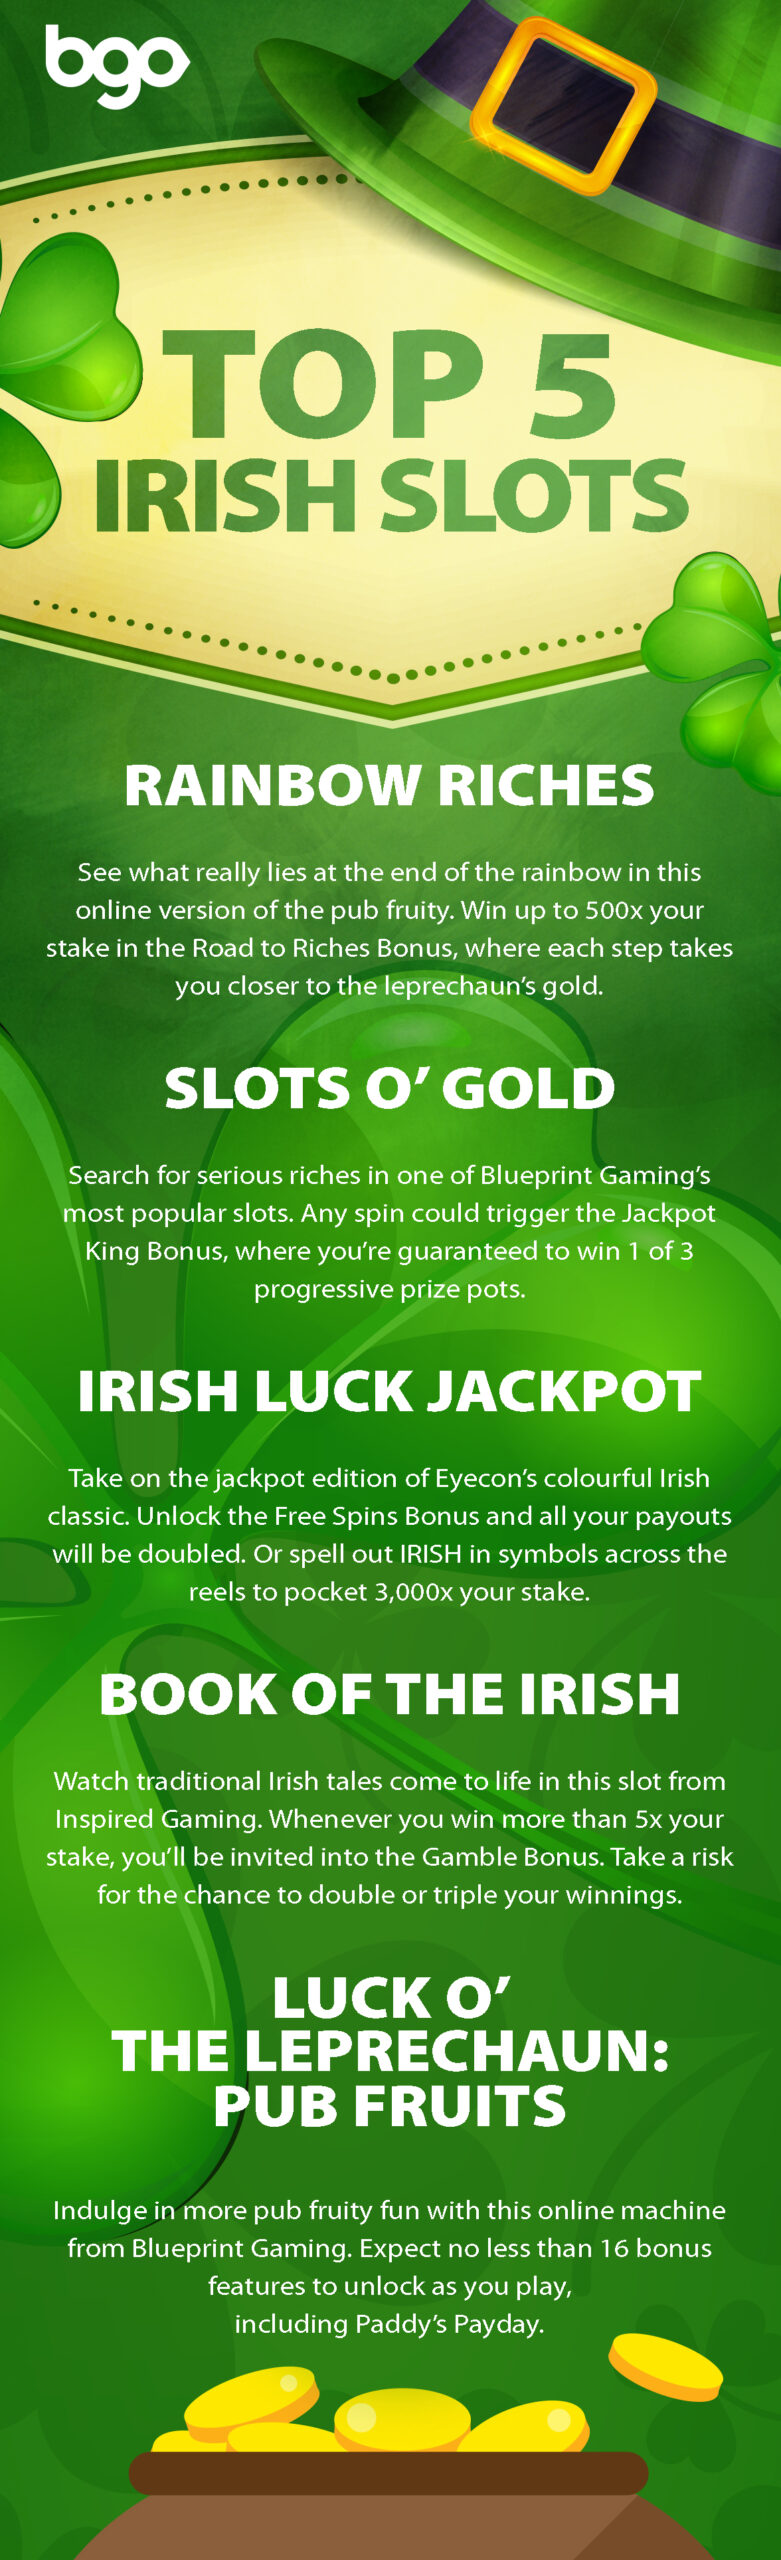 Top 5 Irish Slots Infographic